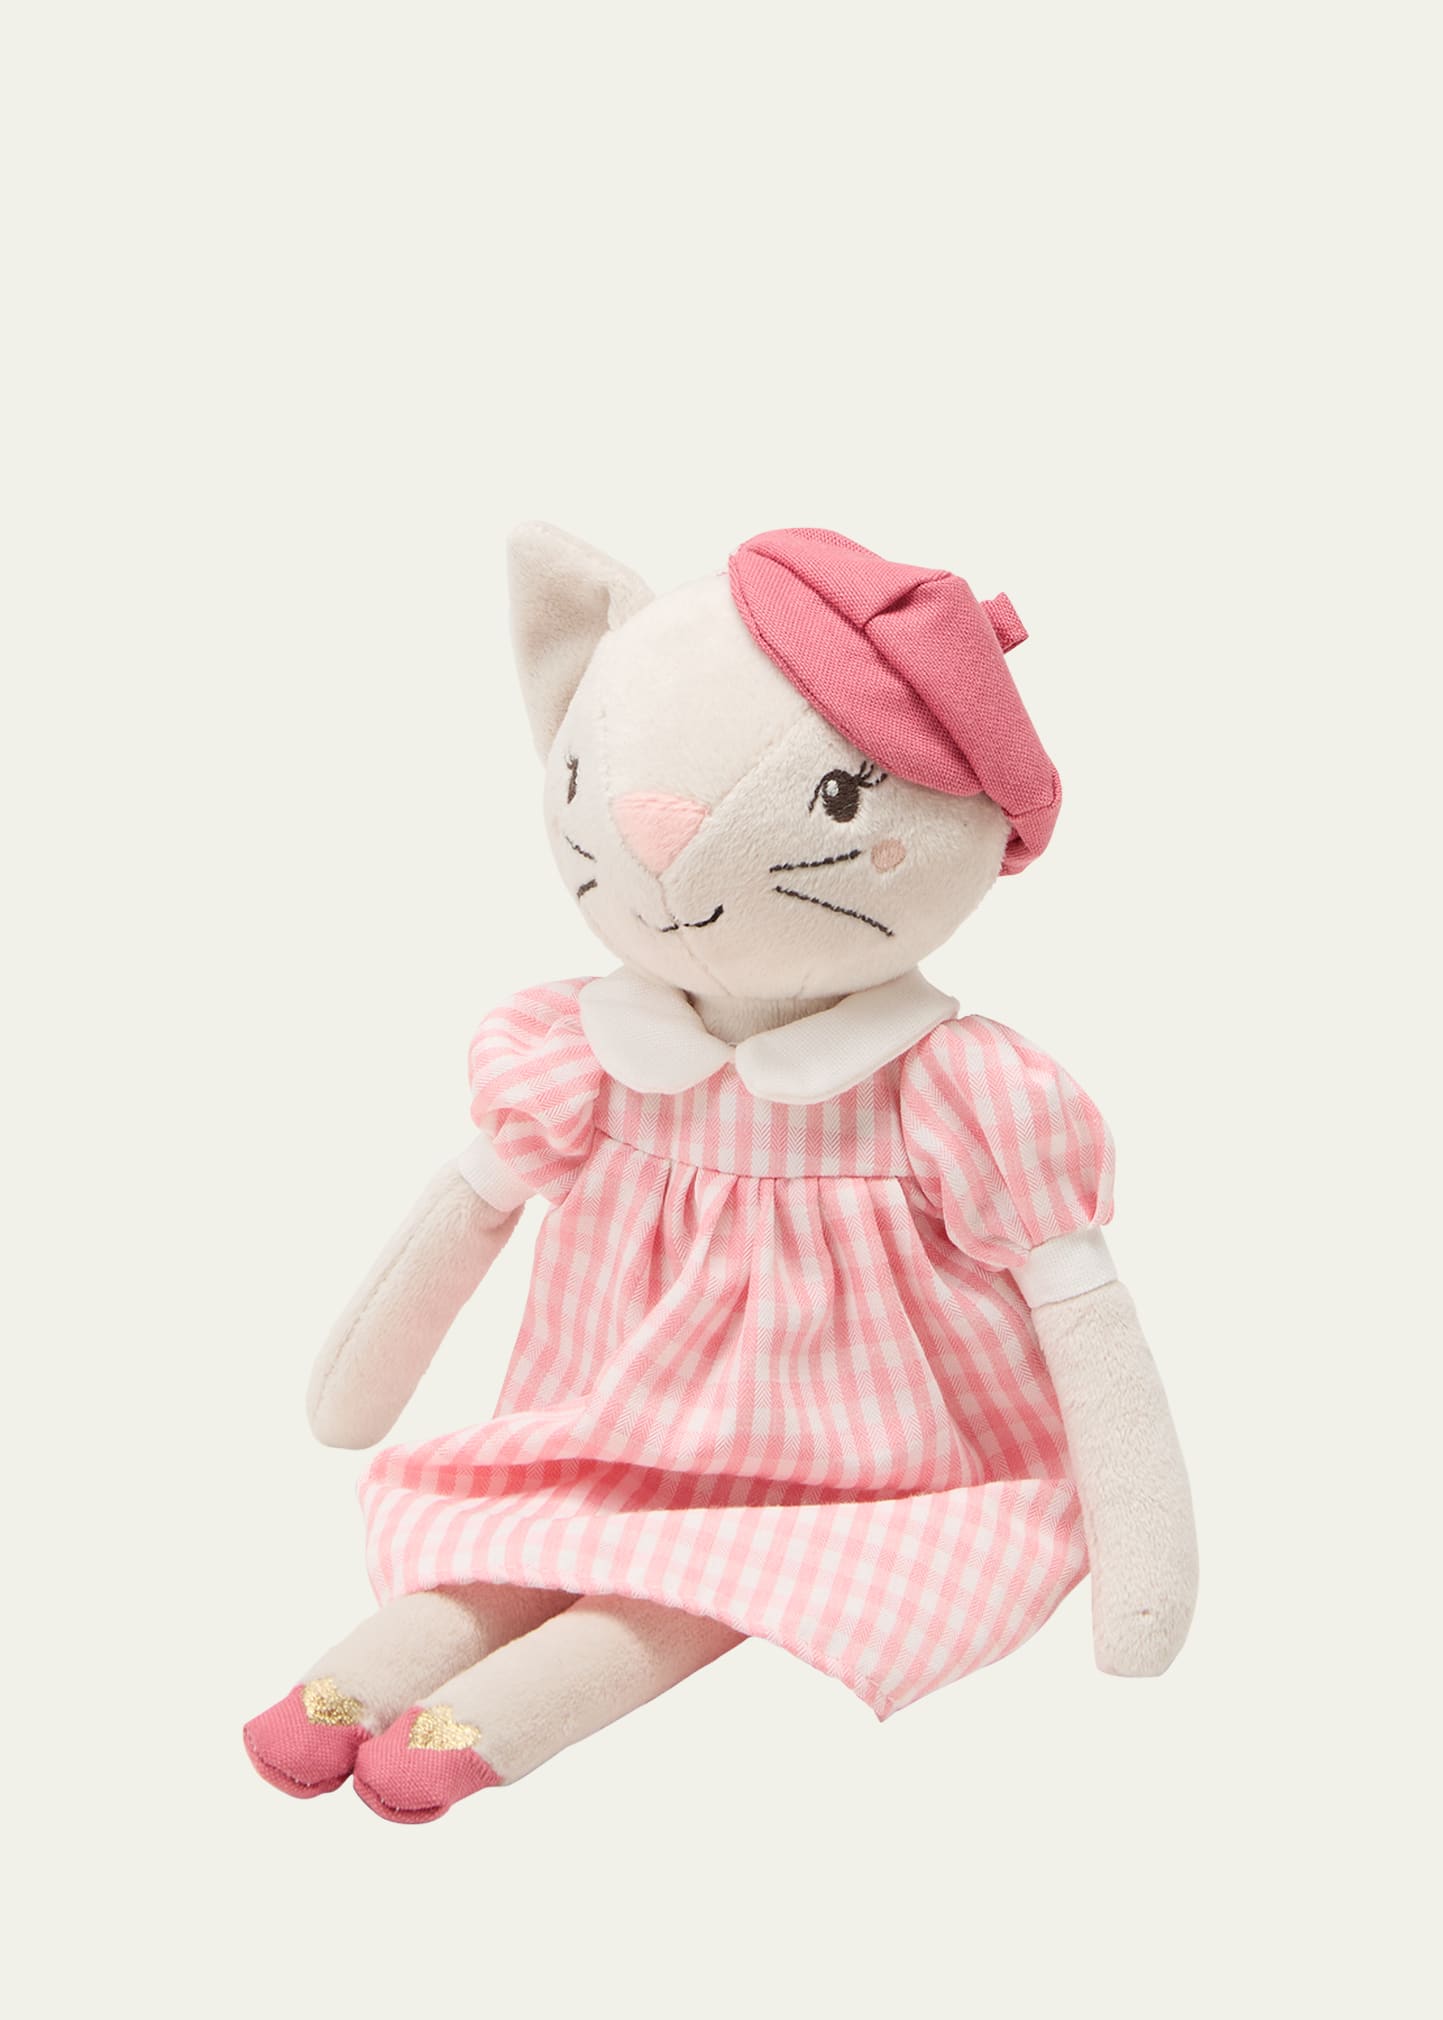 Minette Parisian Kitty Doll